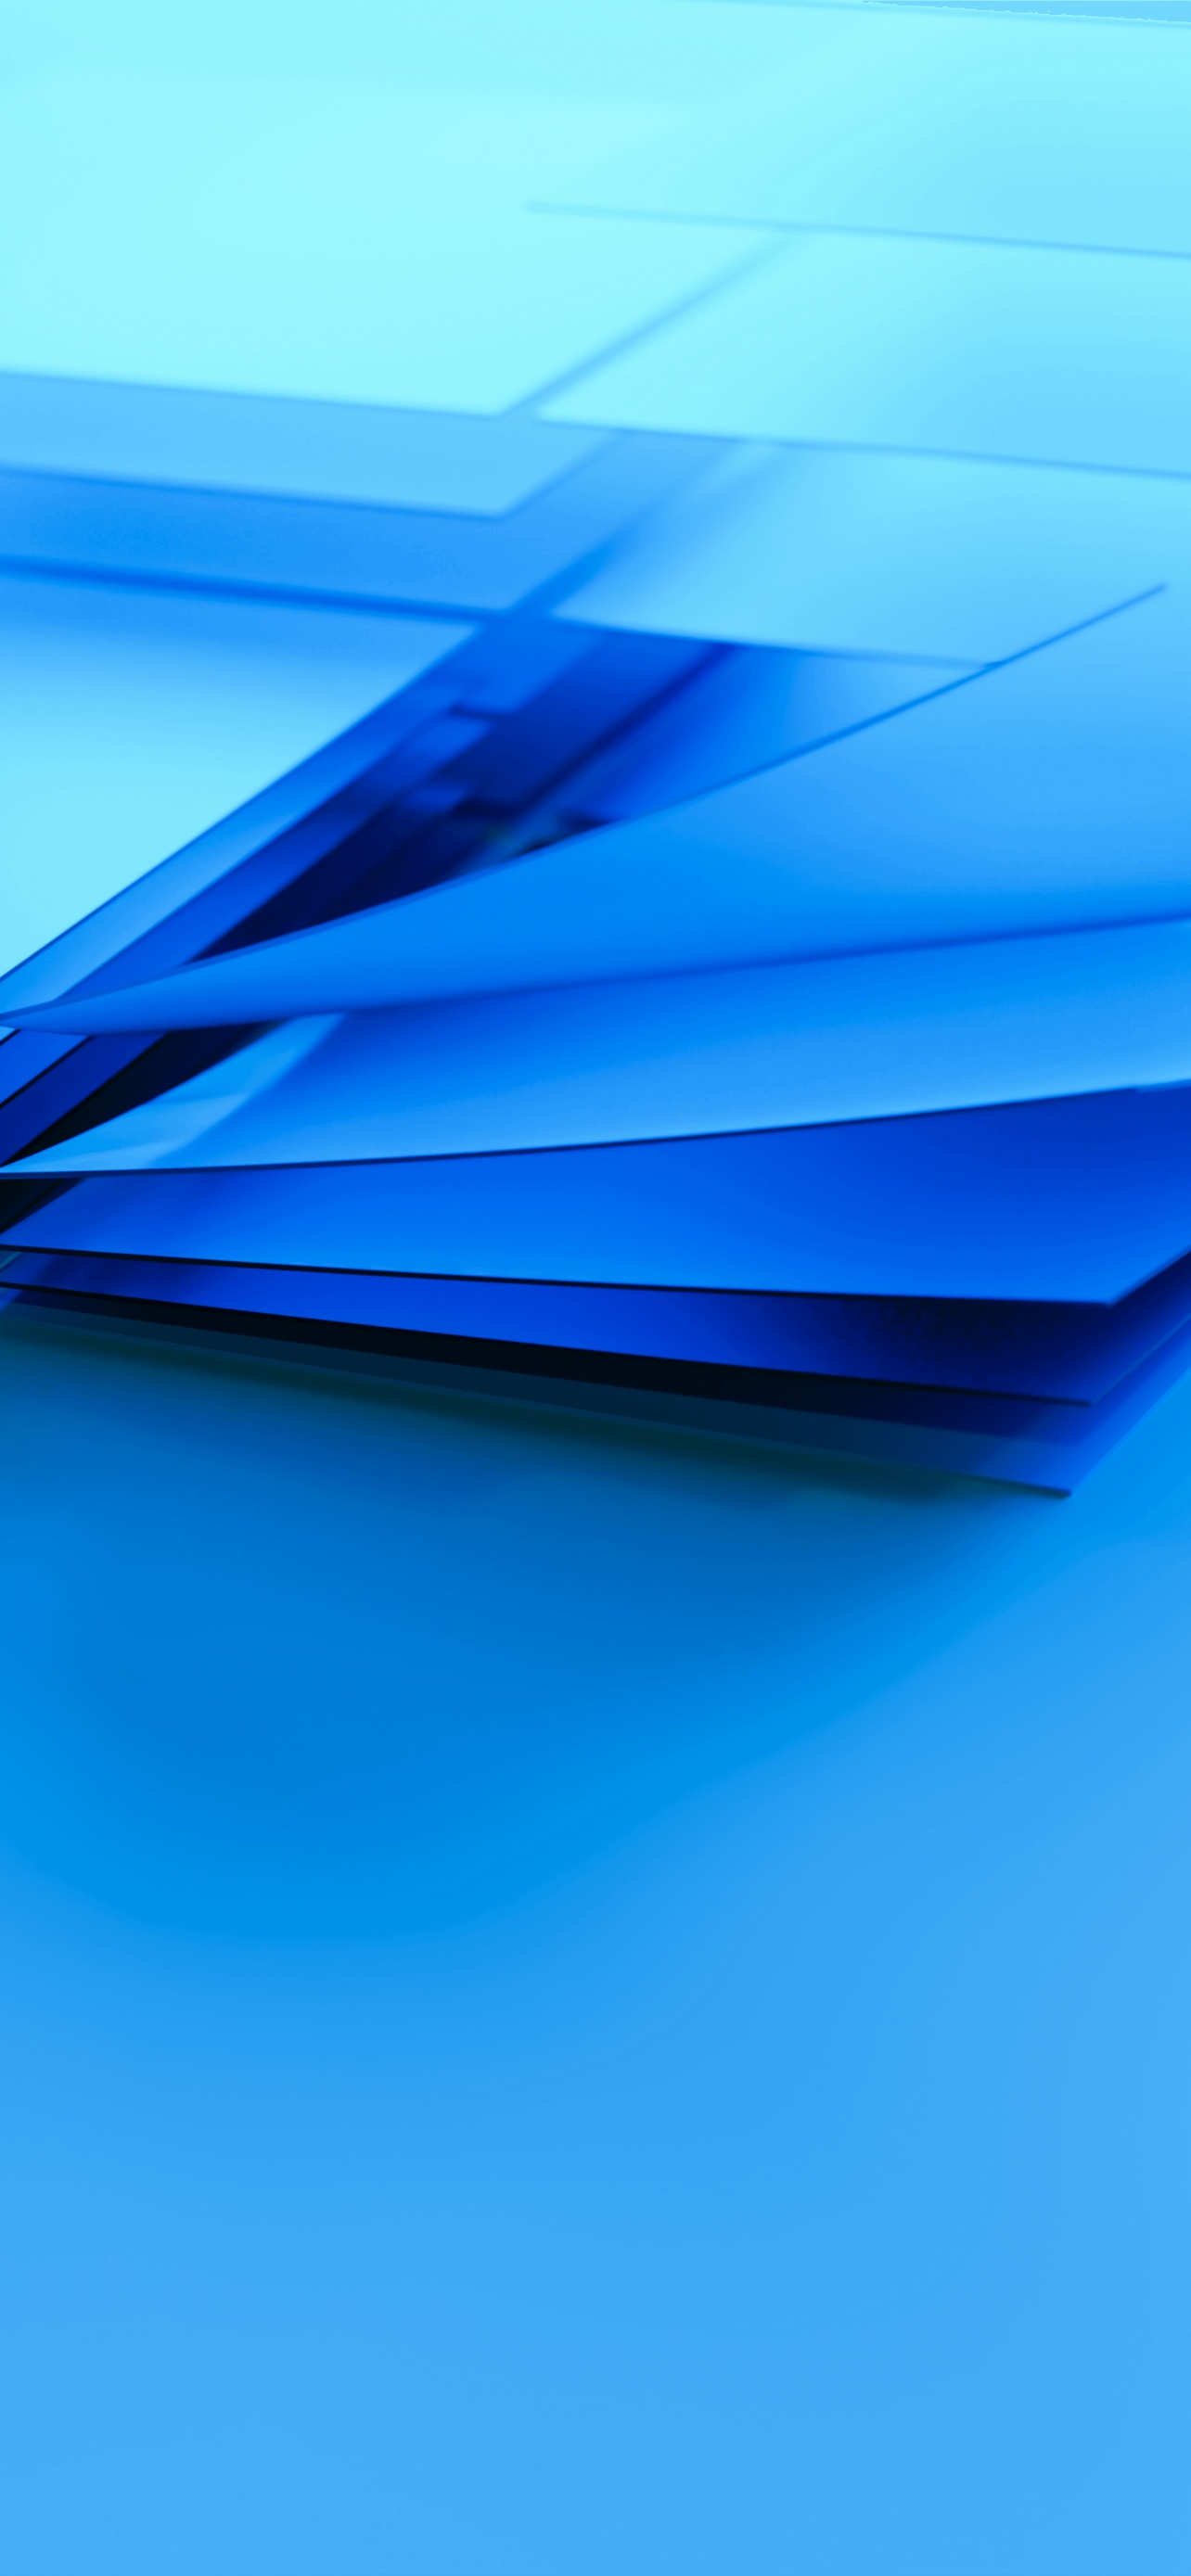 Bạn thích những hình nền đơn giản và tinh tế? Windows logo Wallpaper 4K, Blue, Layers, 5K, Abstract sẽ là gợi ý hoàn hảo cho bạn. Với khối lượng dữ liệu siêu cao, hình ảnh rõ nét và độ phân giải ấn tượng, đây chắc chắn là một trong những lựa chọn tuyệt vời cho máy tính của bạn.